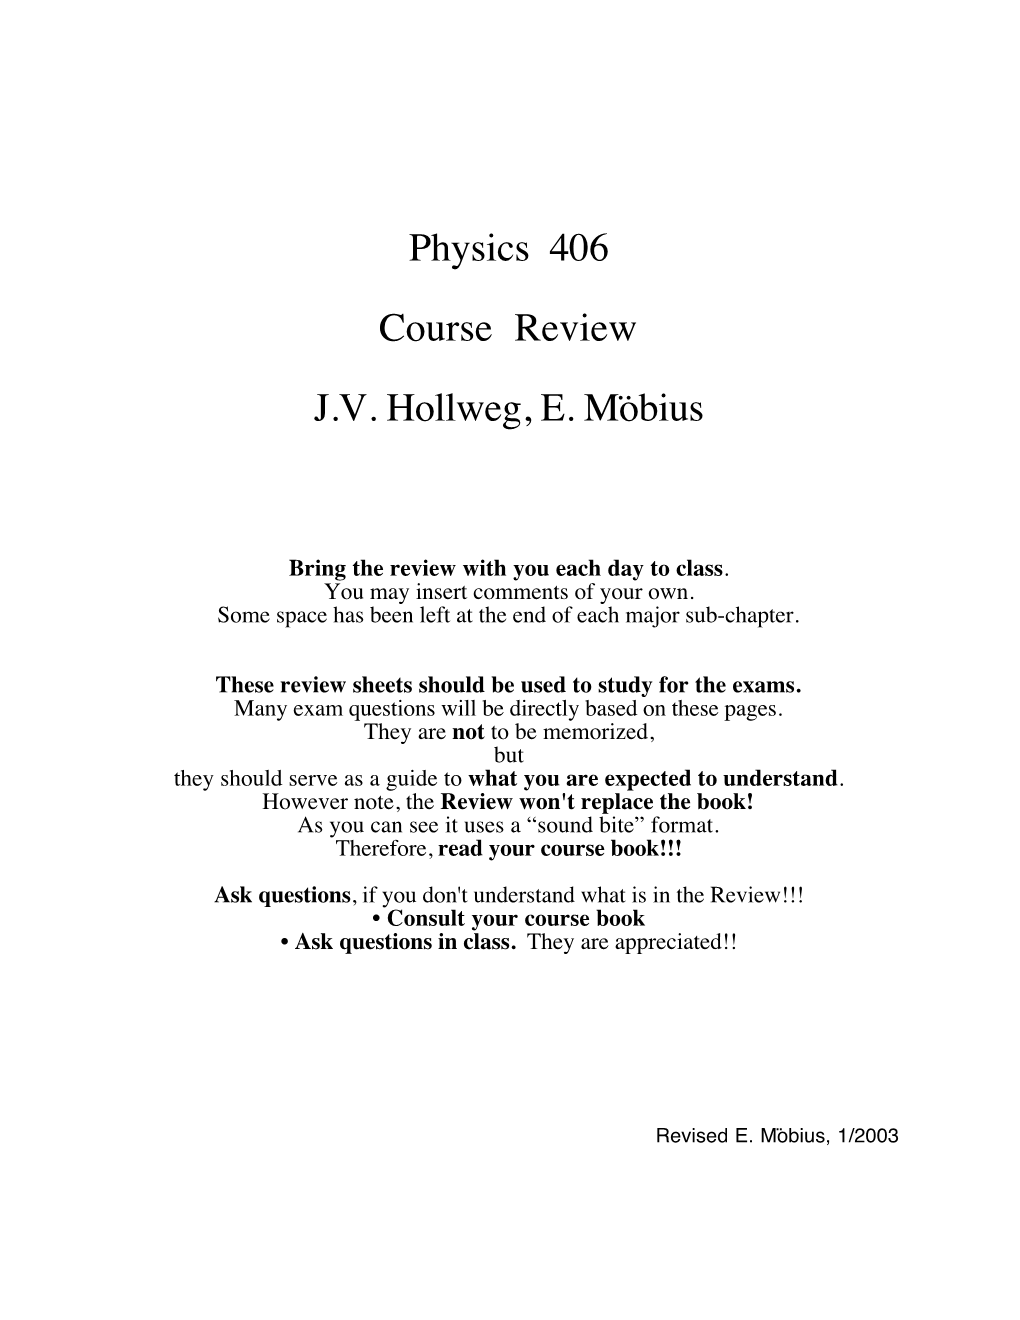 Physics 406 Course Review J.V. Hollweg, E. Möbius